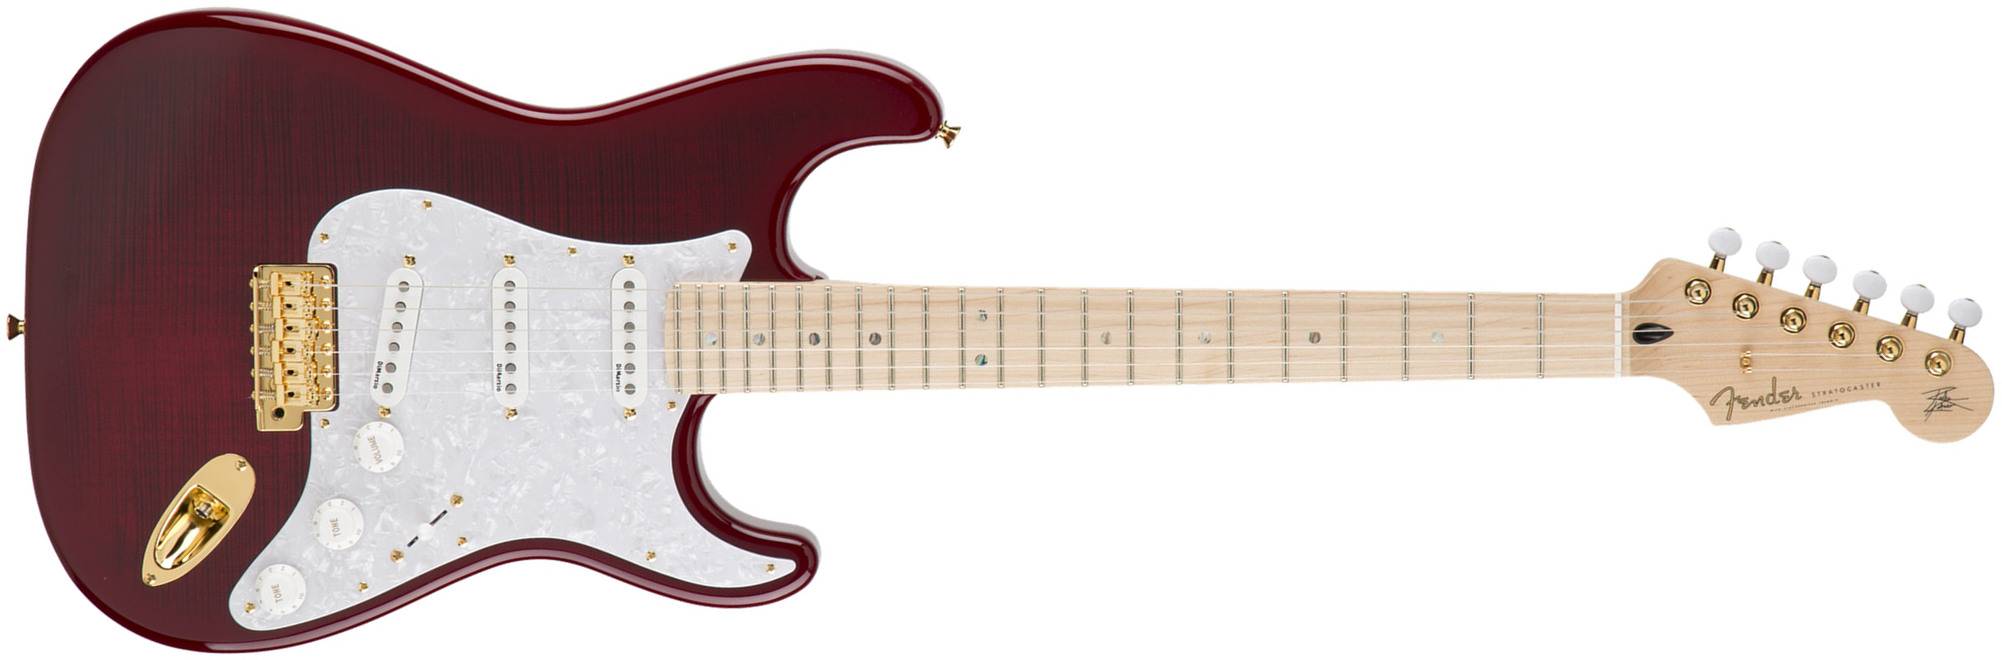 Fender Richie Kotzen Strat Japan Ltd 3s Mn - Transparent Red Burst - Guitare Électrique Forme Str - Main picture